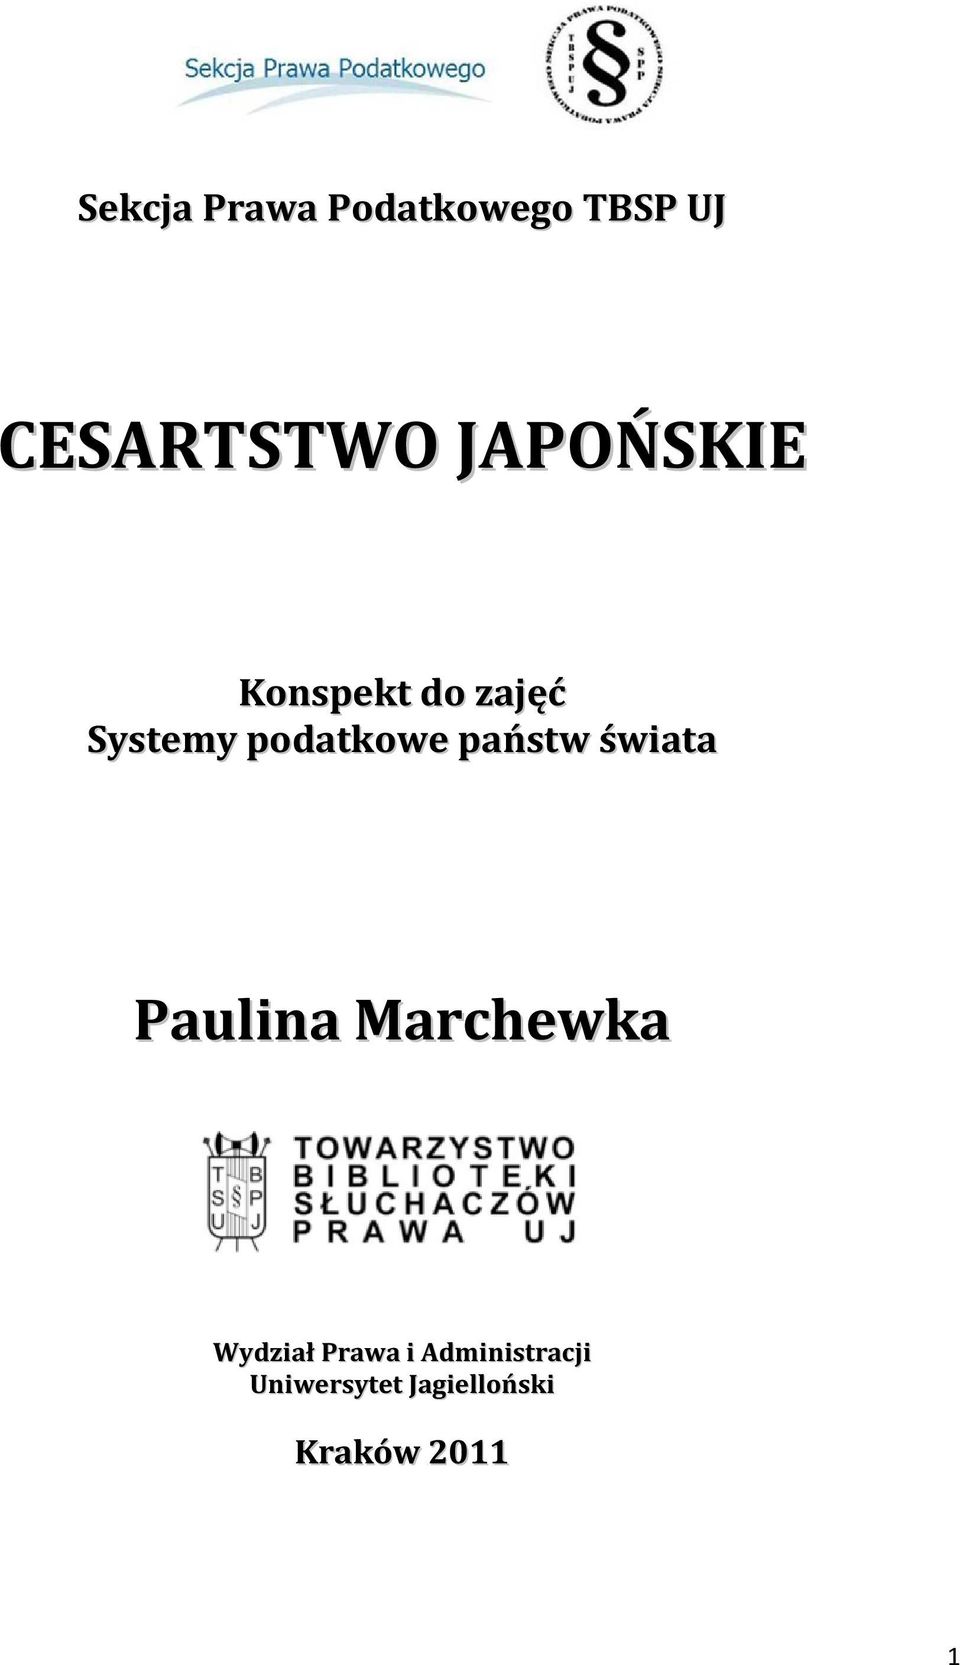 państw świata Paulina Marchewka Wydział Prawa i